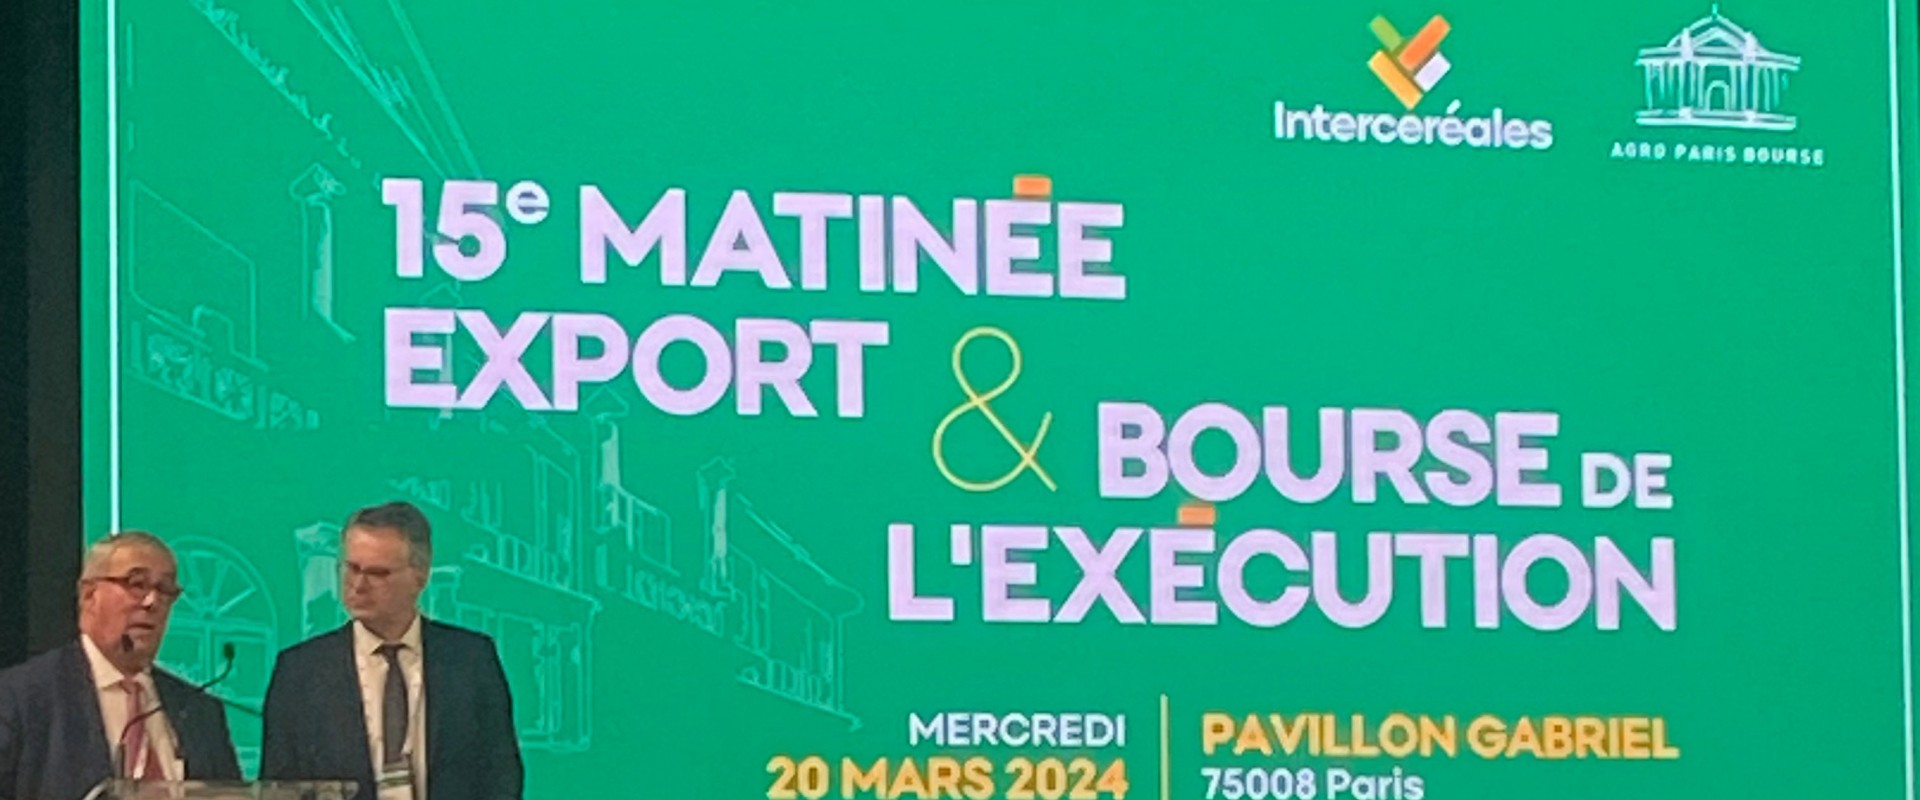 Nantes Saint-Nazaire Port participe à la Matinée Export Intercéréales